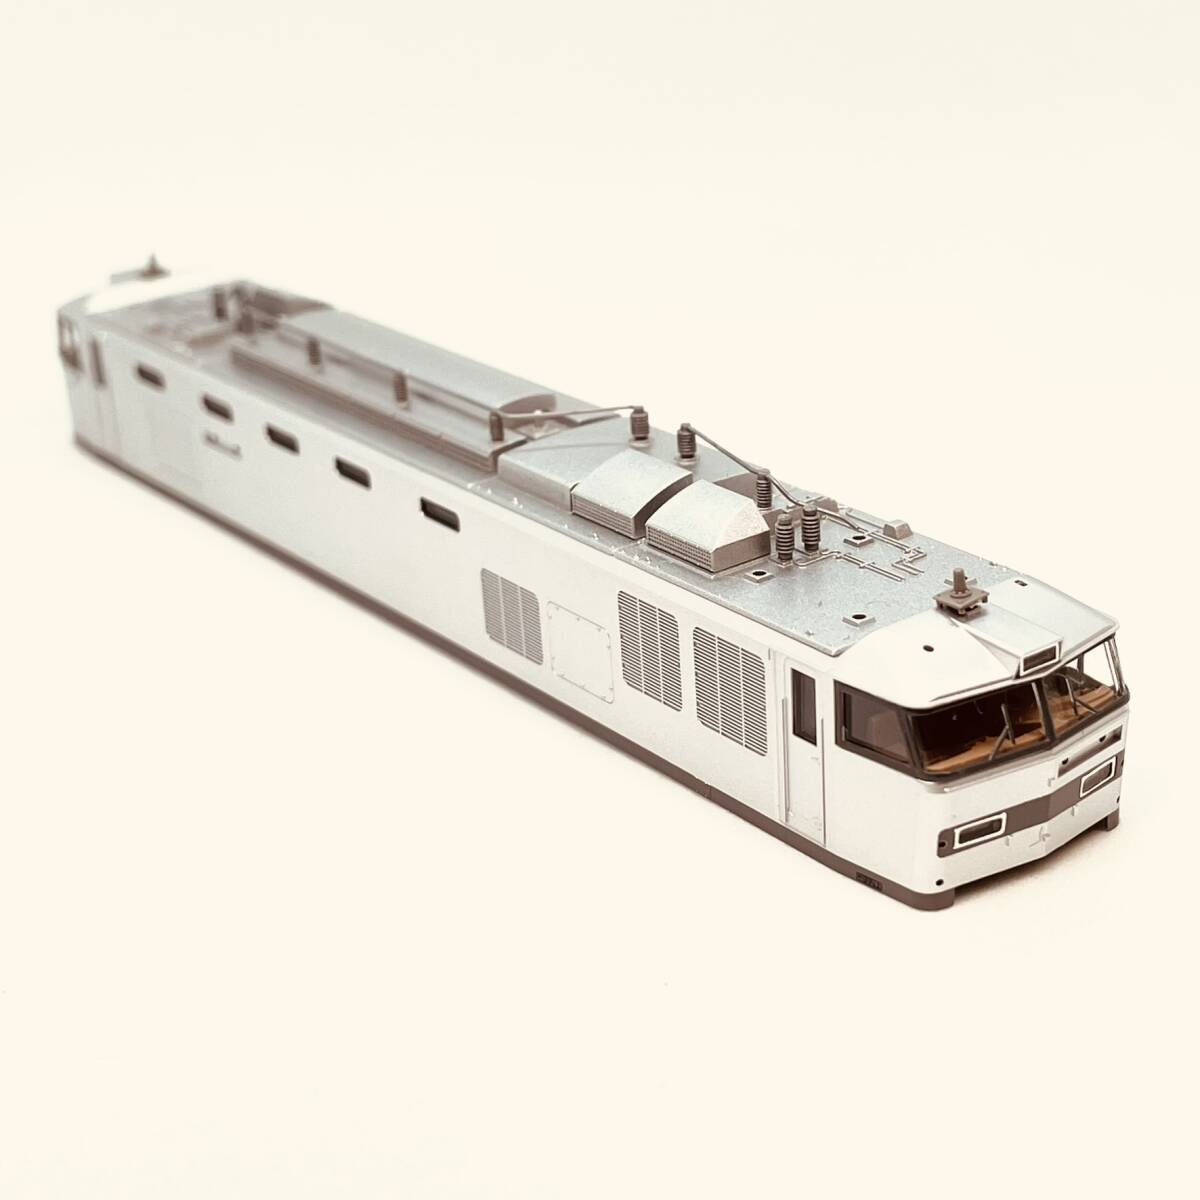 TOMIX EF510-500 корпус + стекло + движение шт. + инструкция 1 обе минут ввод 7183 JR EF510-500 форма электрический локомотив (JR груз specification * серебряный цвет ) c роза si